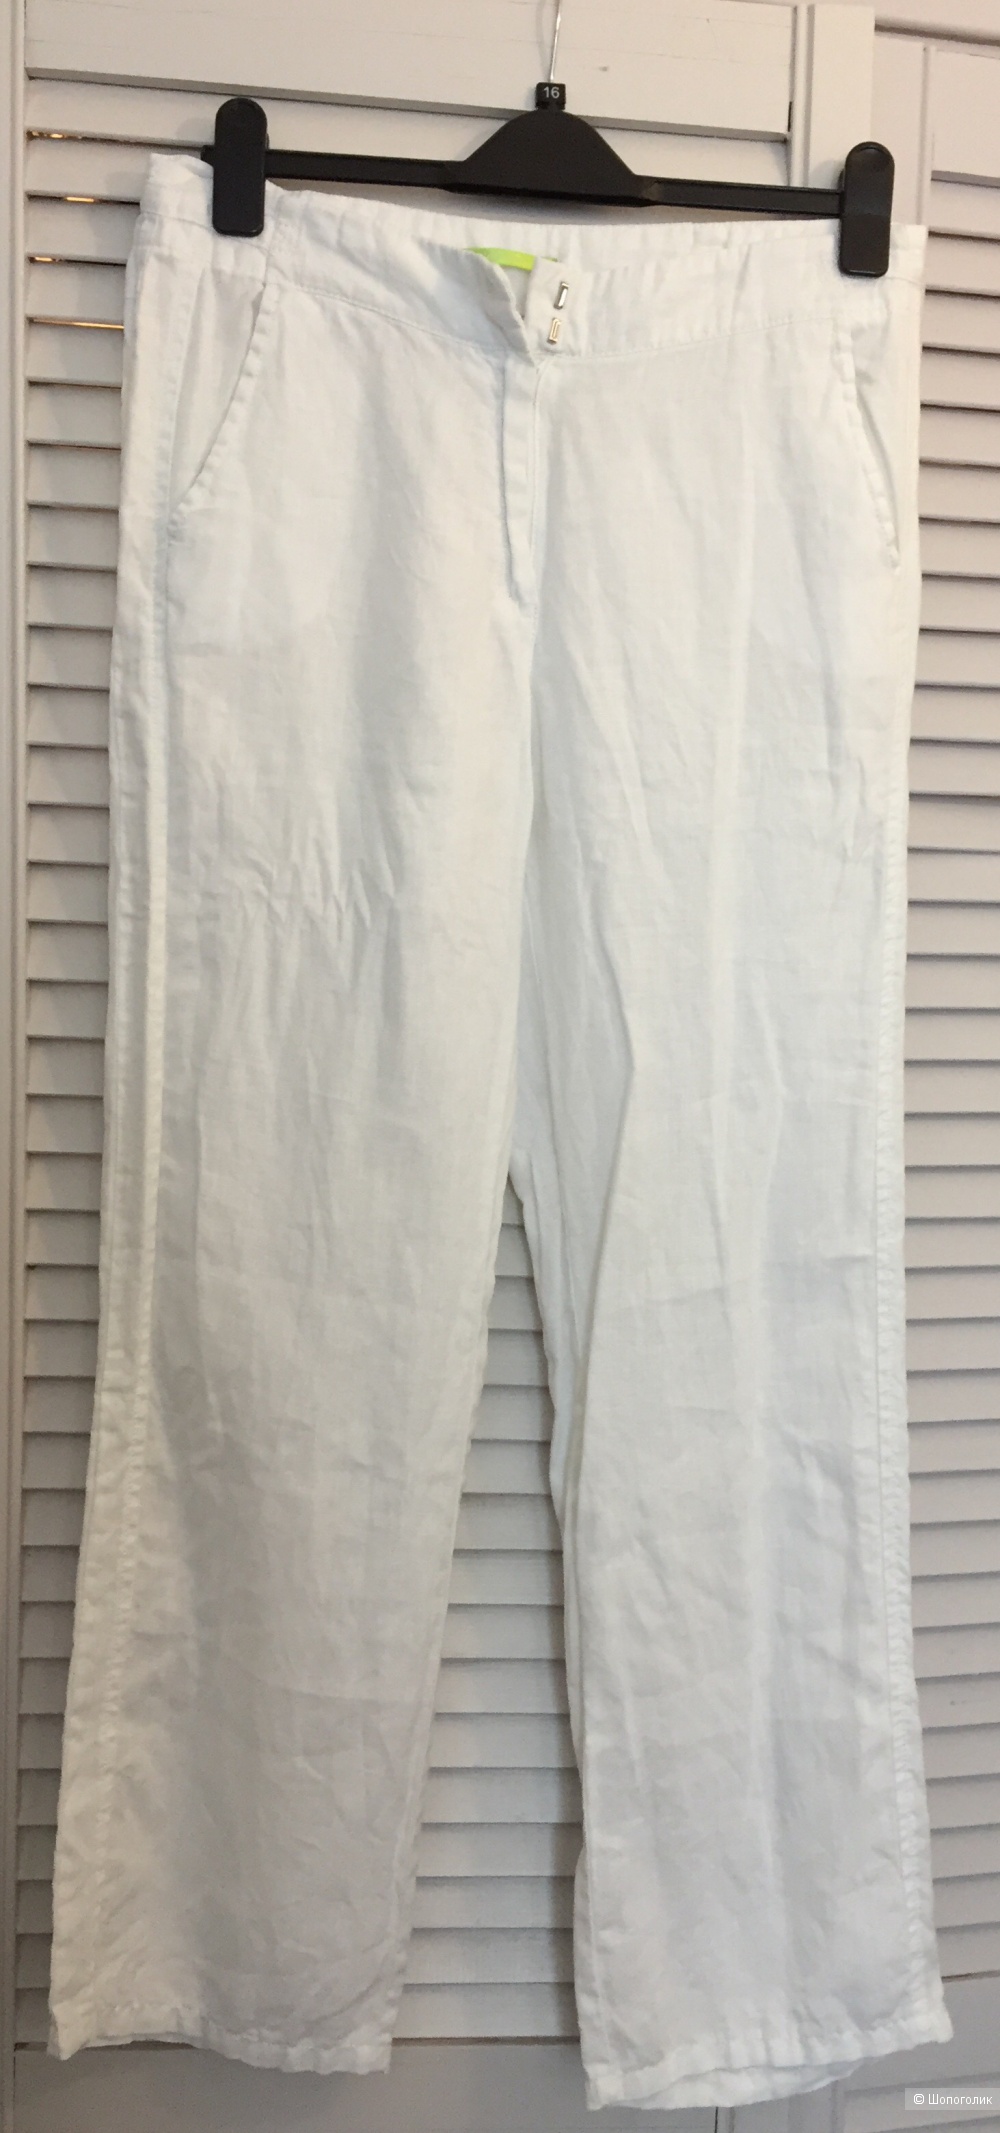 Льняные брюки Steilmann 44-46 размер